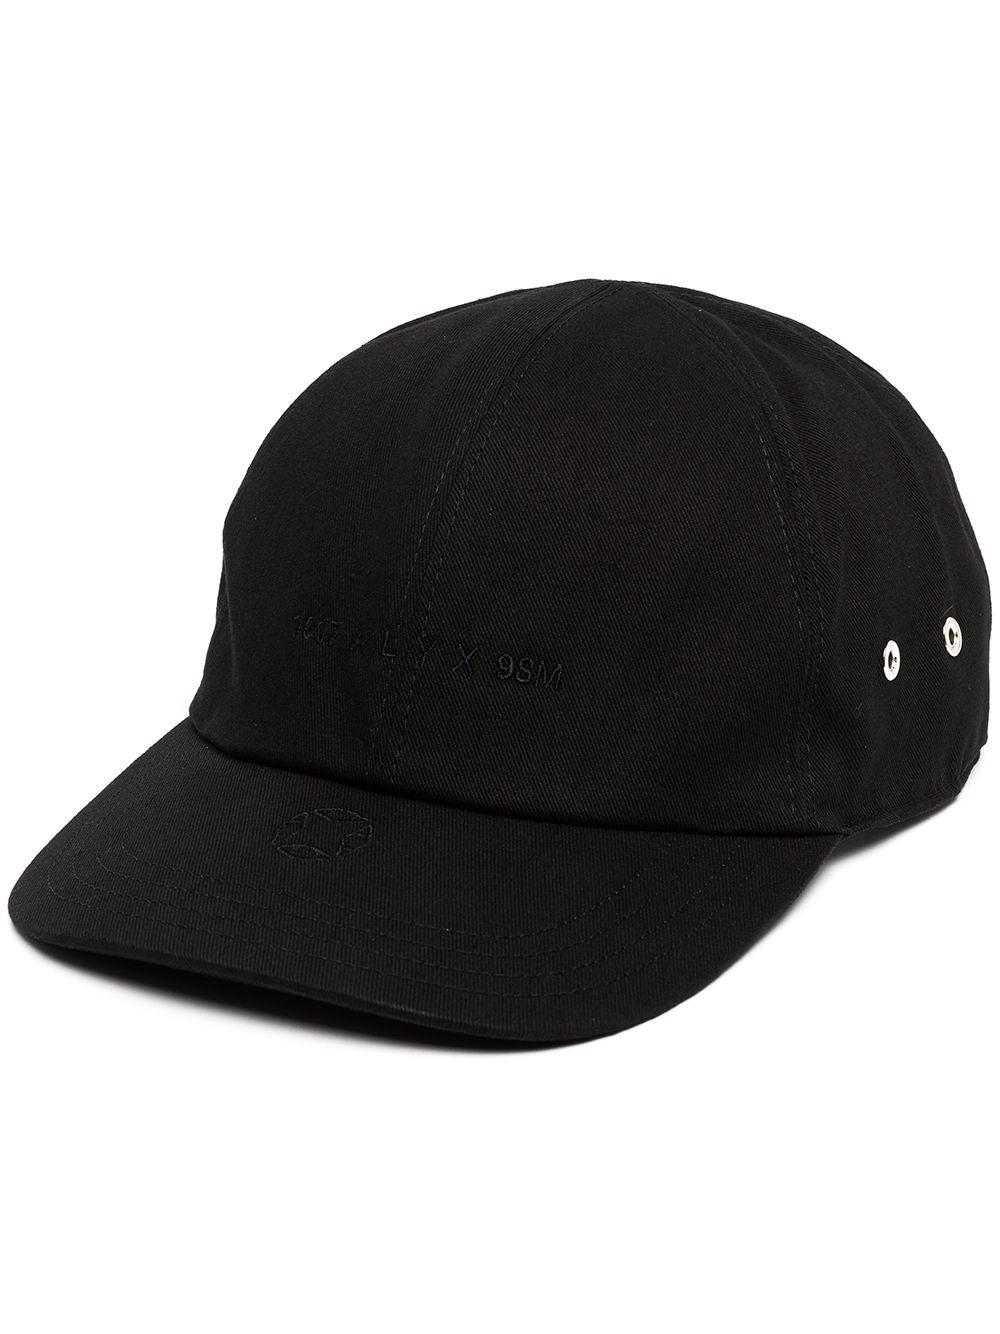 Alyx Men's Logo Hat (Black) by ALYX